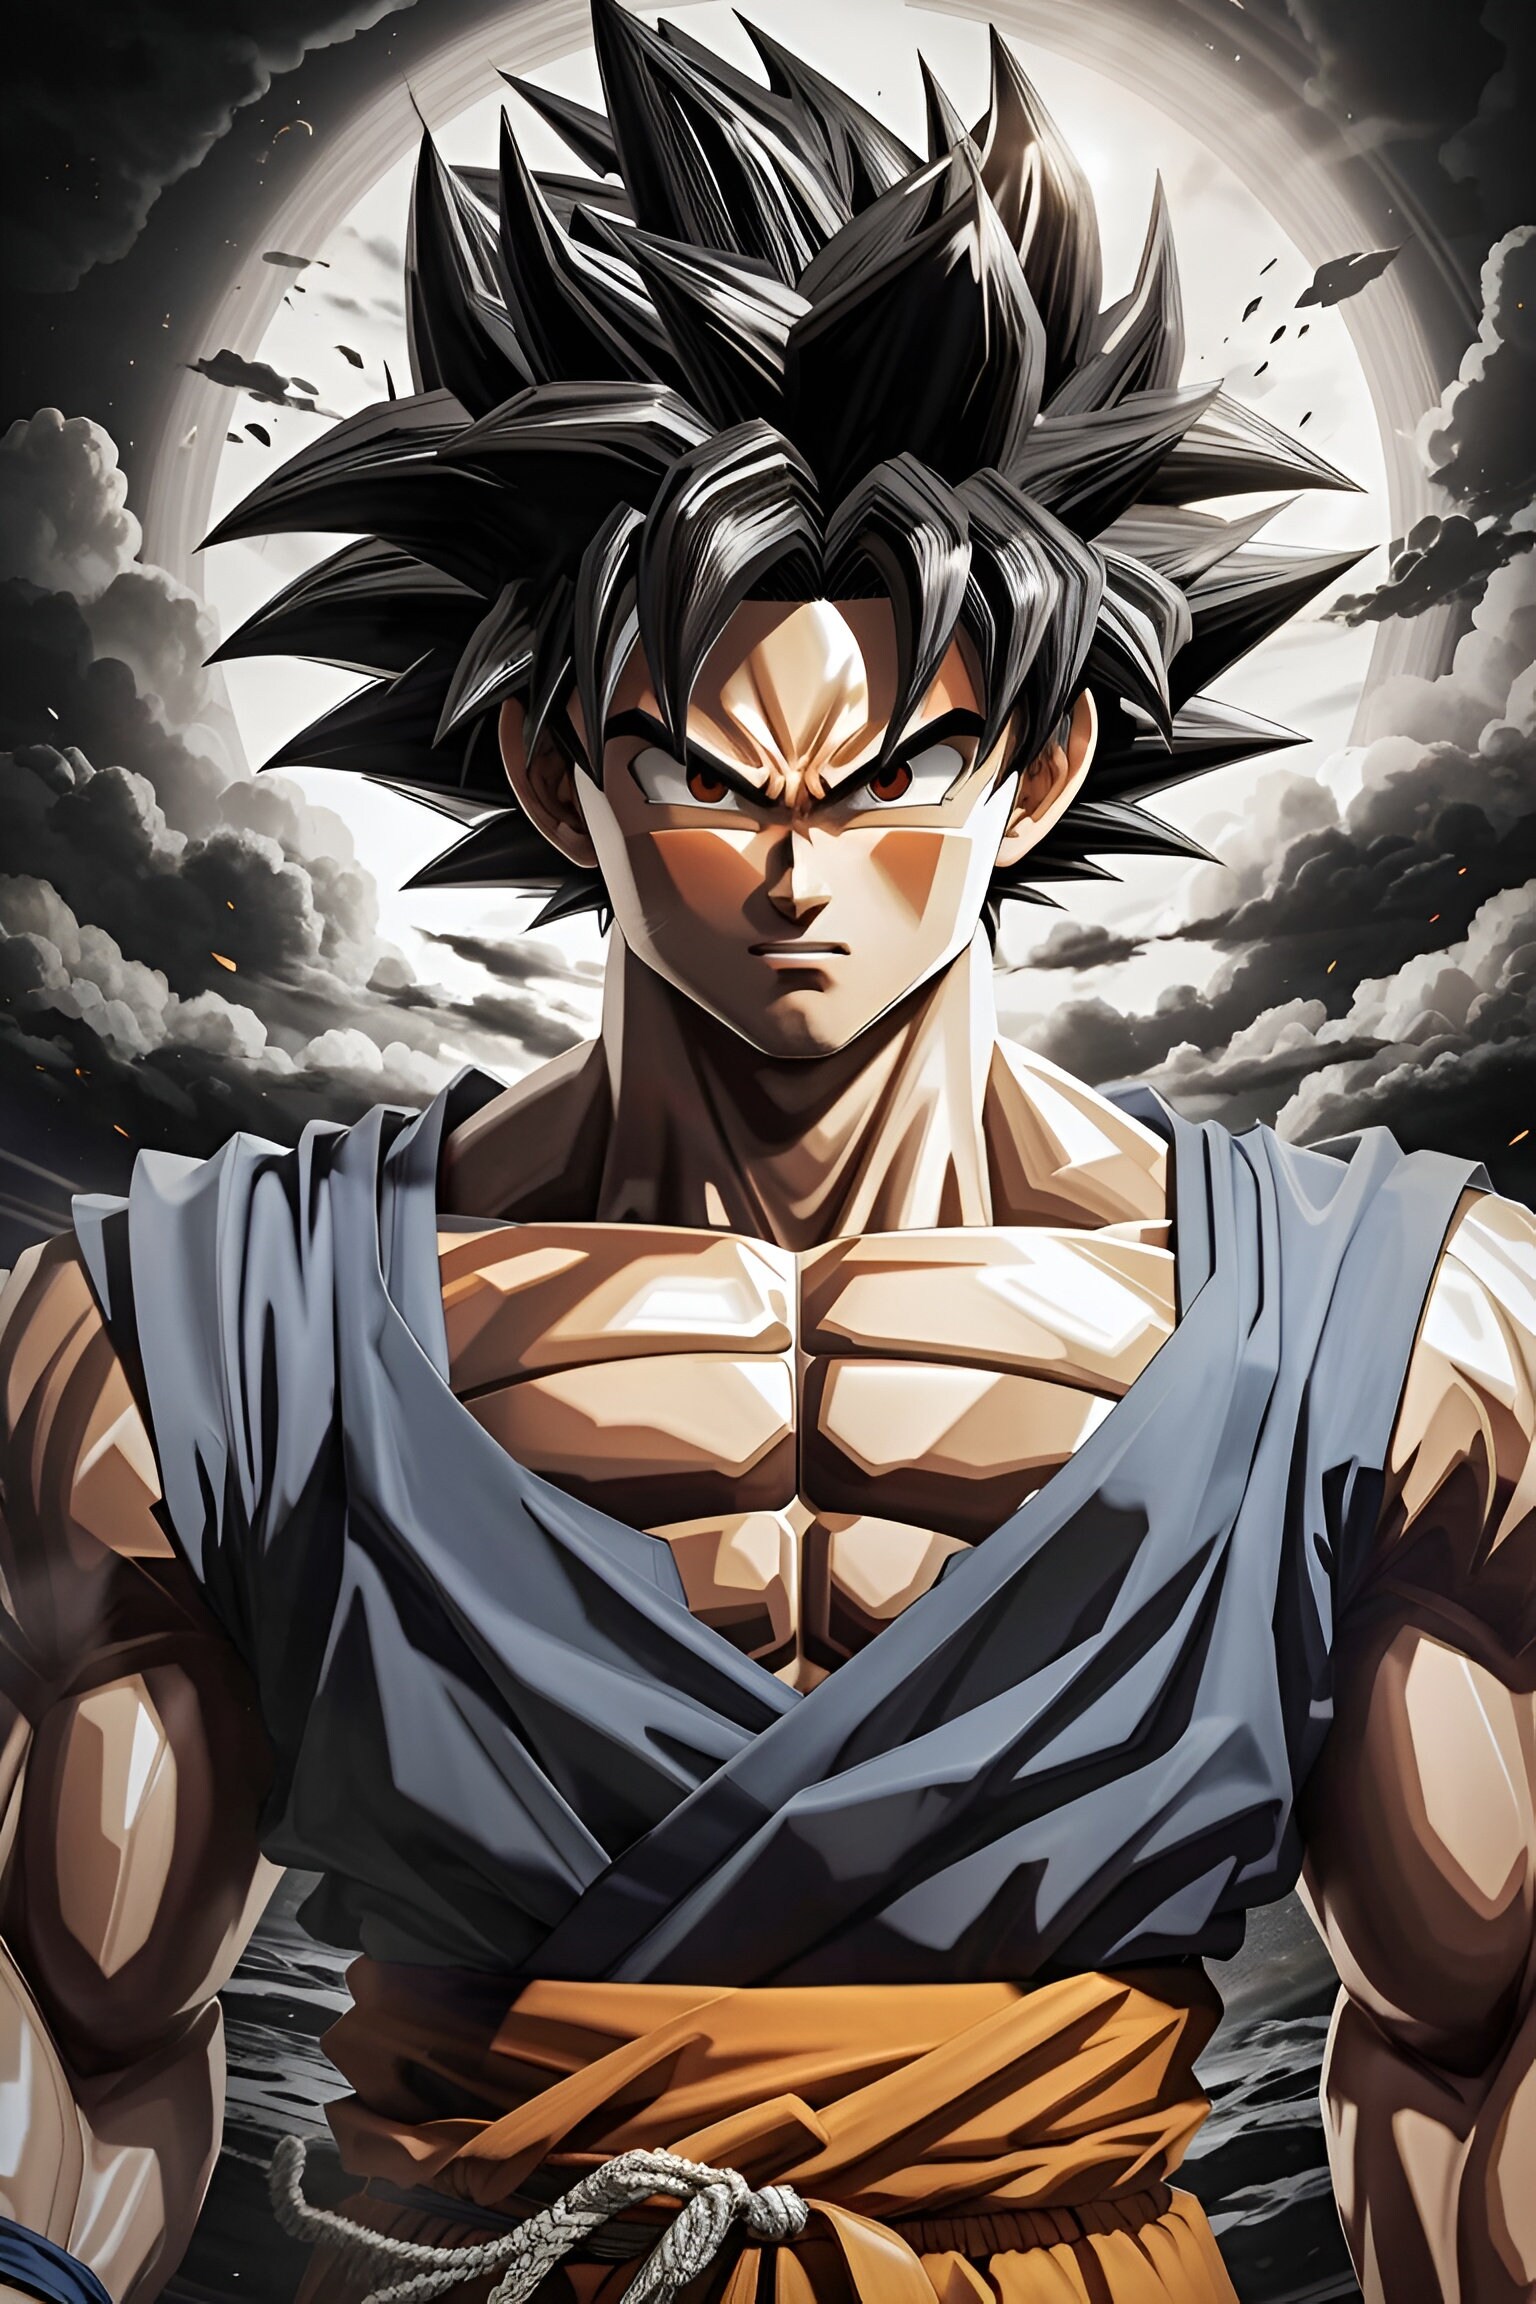 Dragon Ball Z Goku Anime Character Art Digital Design